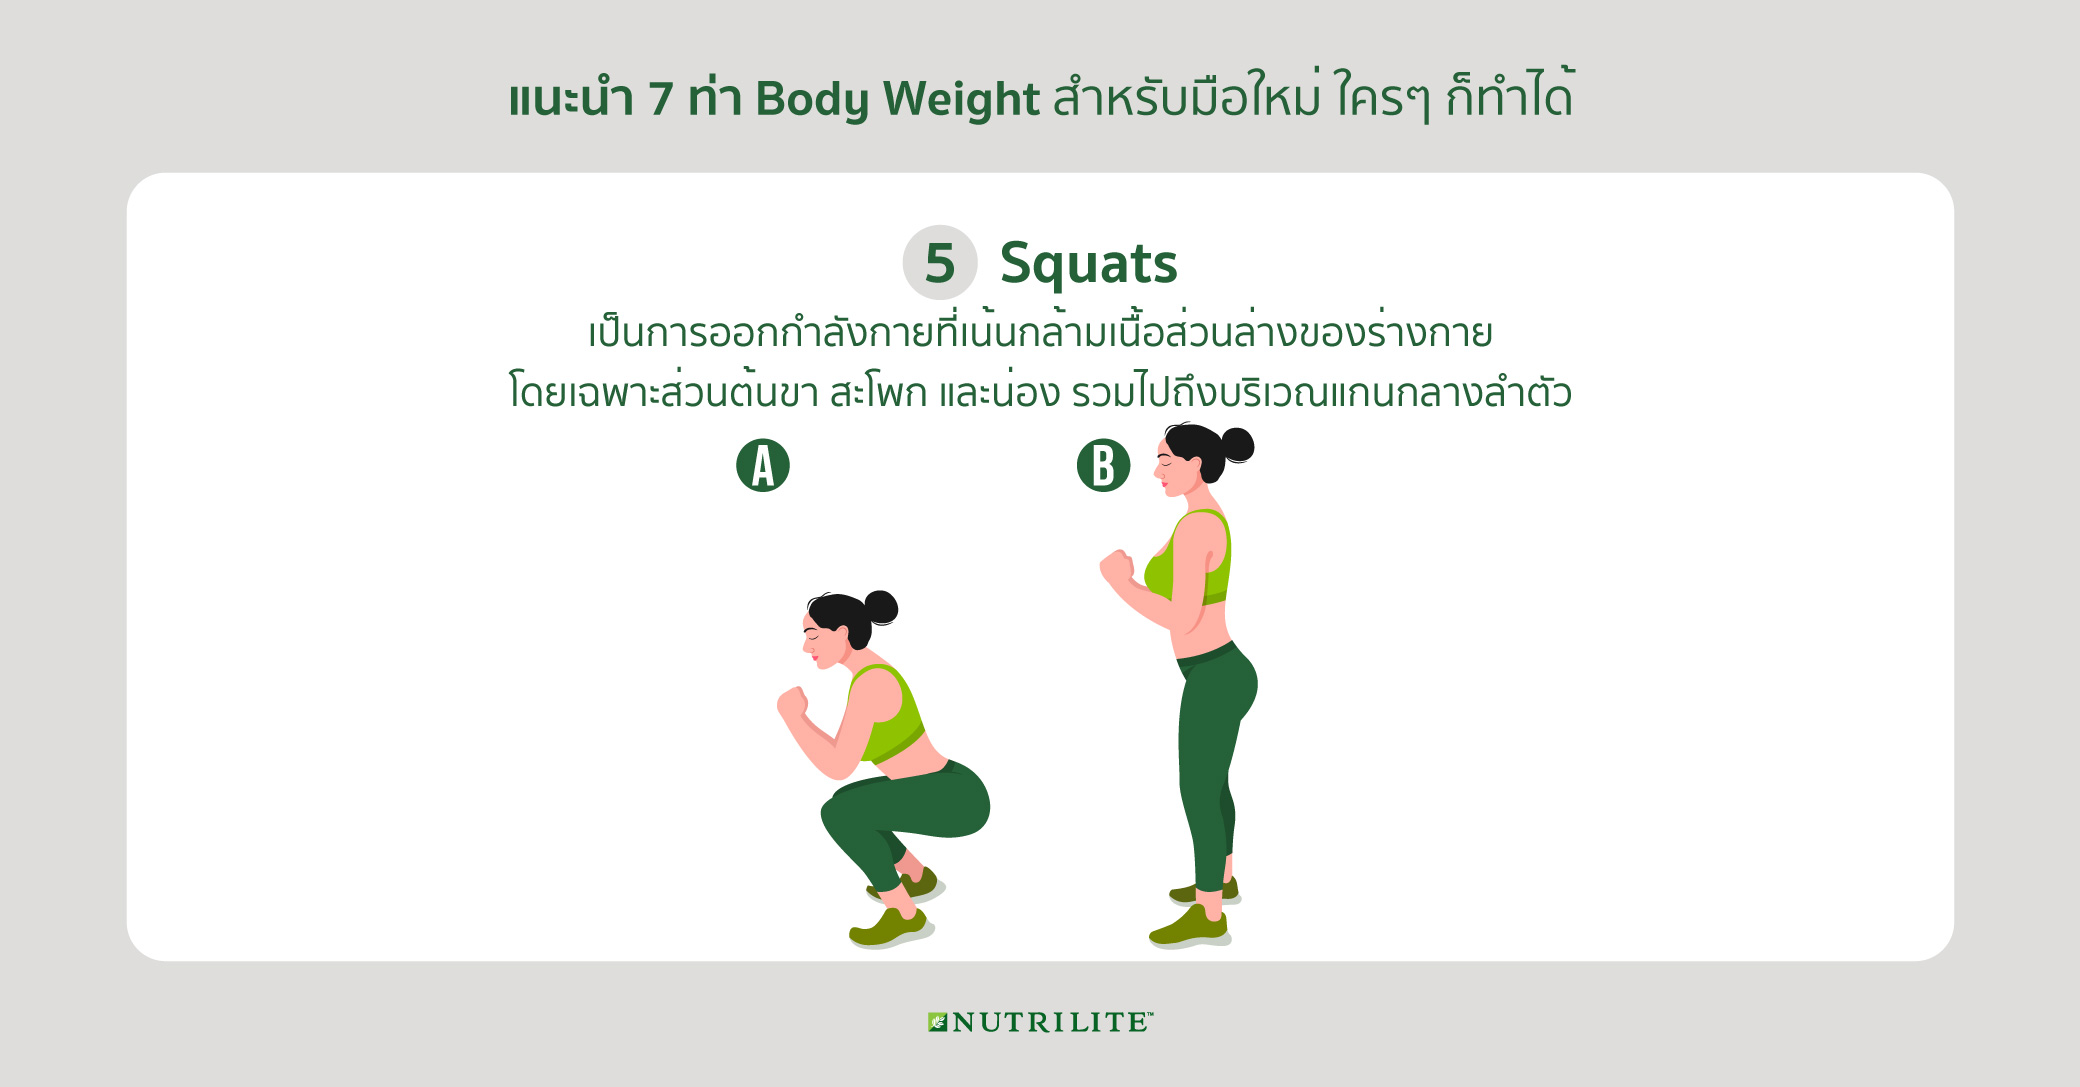 5. Squats